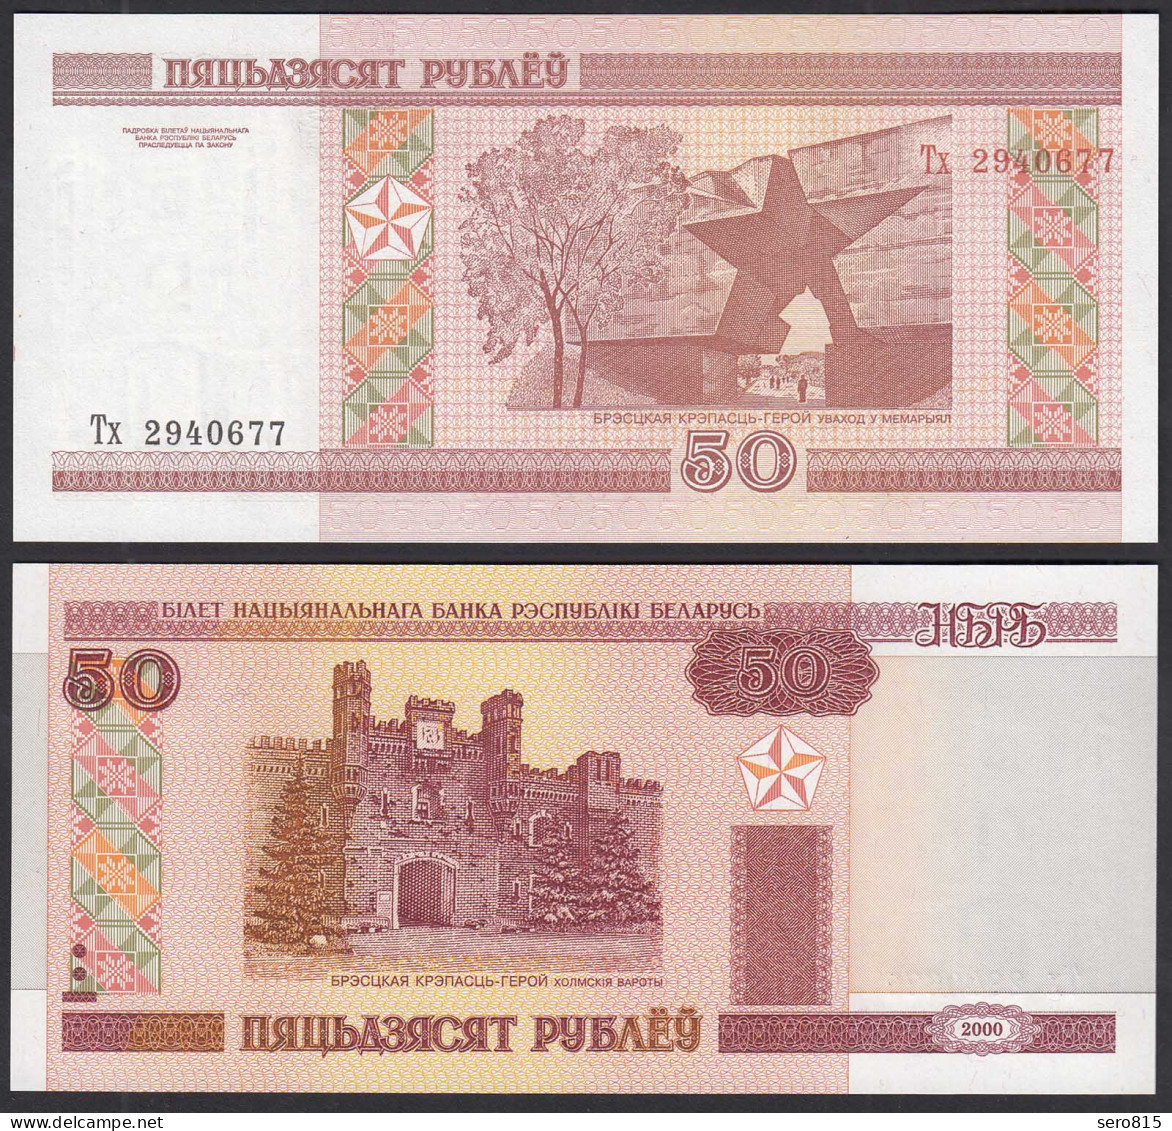 Weißrussland - Belarus 50 Rubel 2000 UNC (1) Pick Nr. 25a   (30881 - Otros – Europa